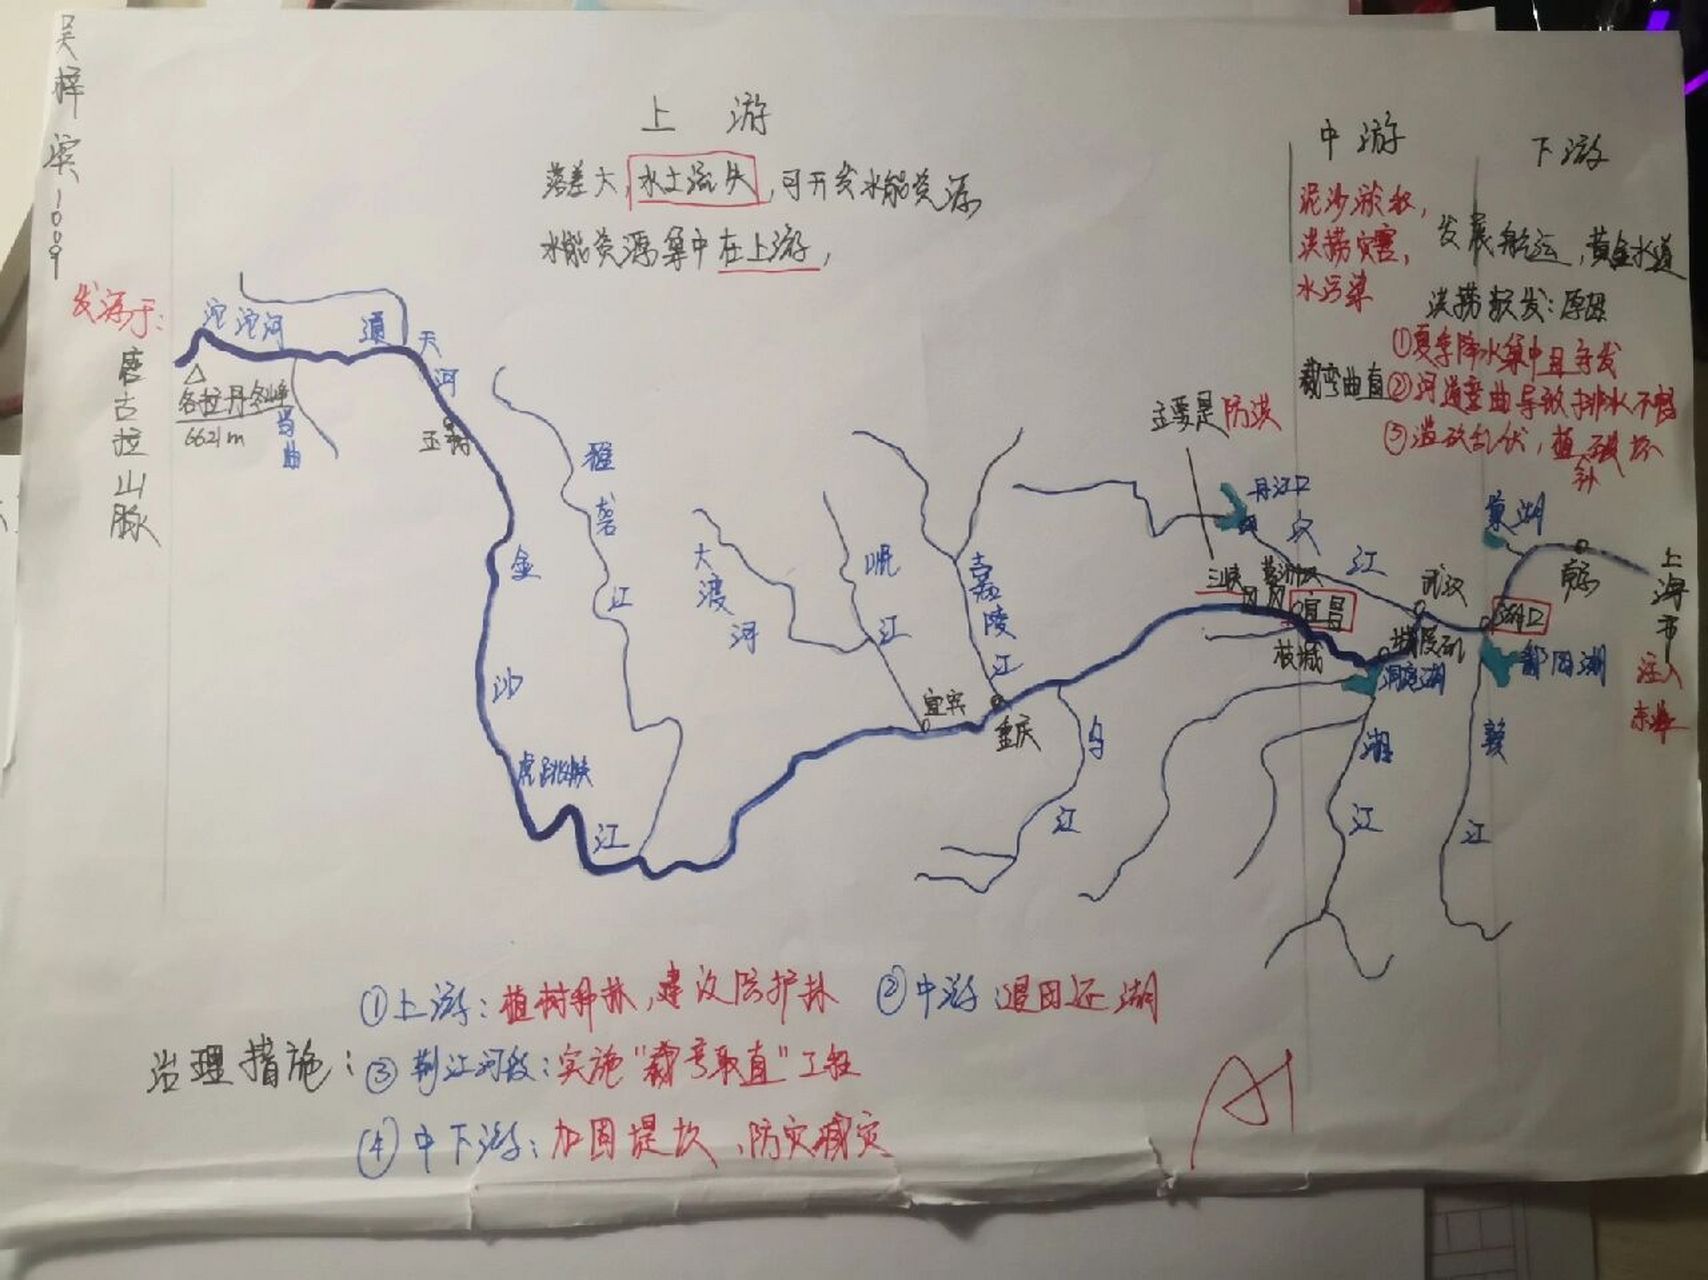 长江黄河知识点结构图图片